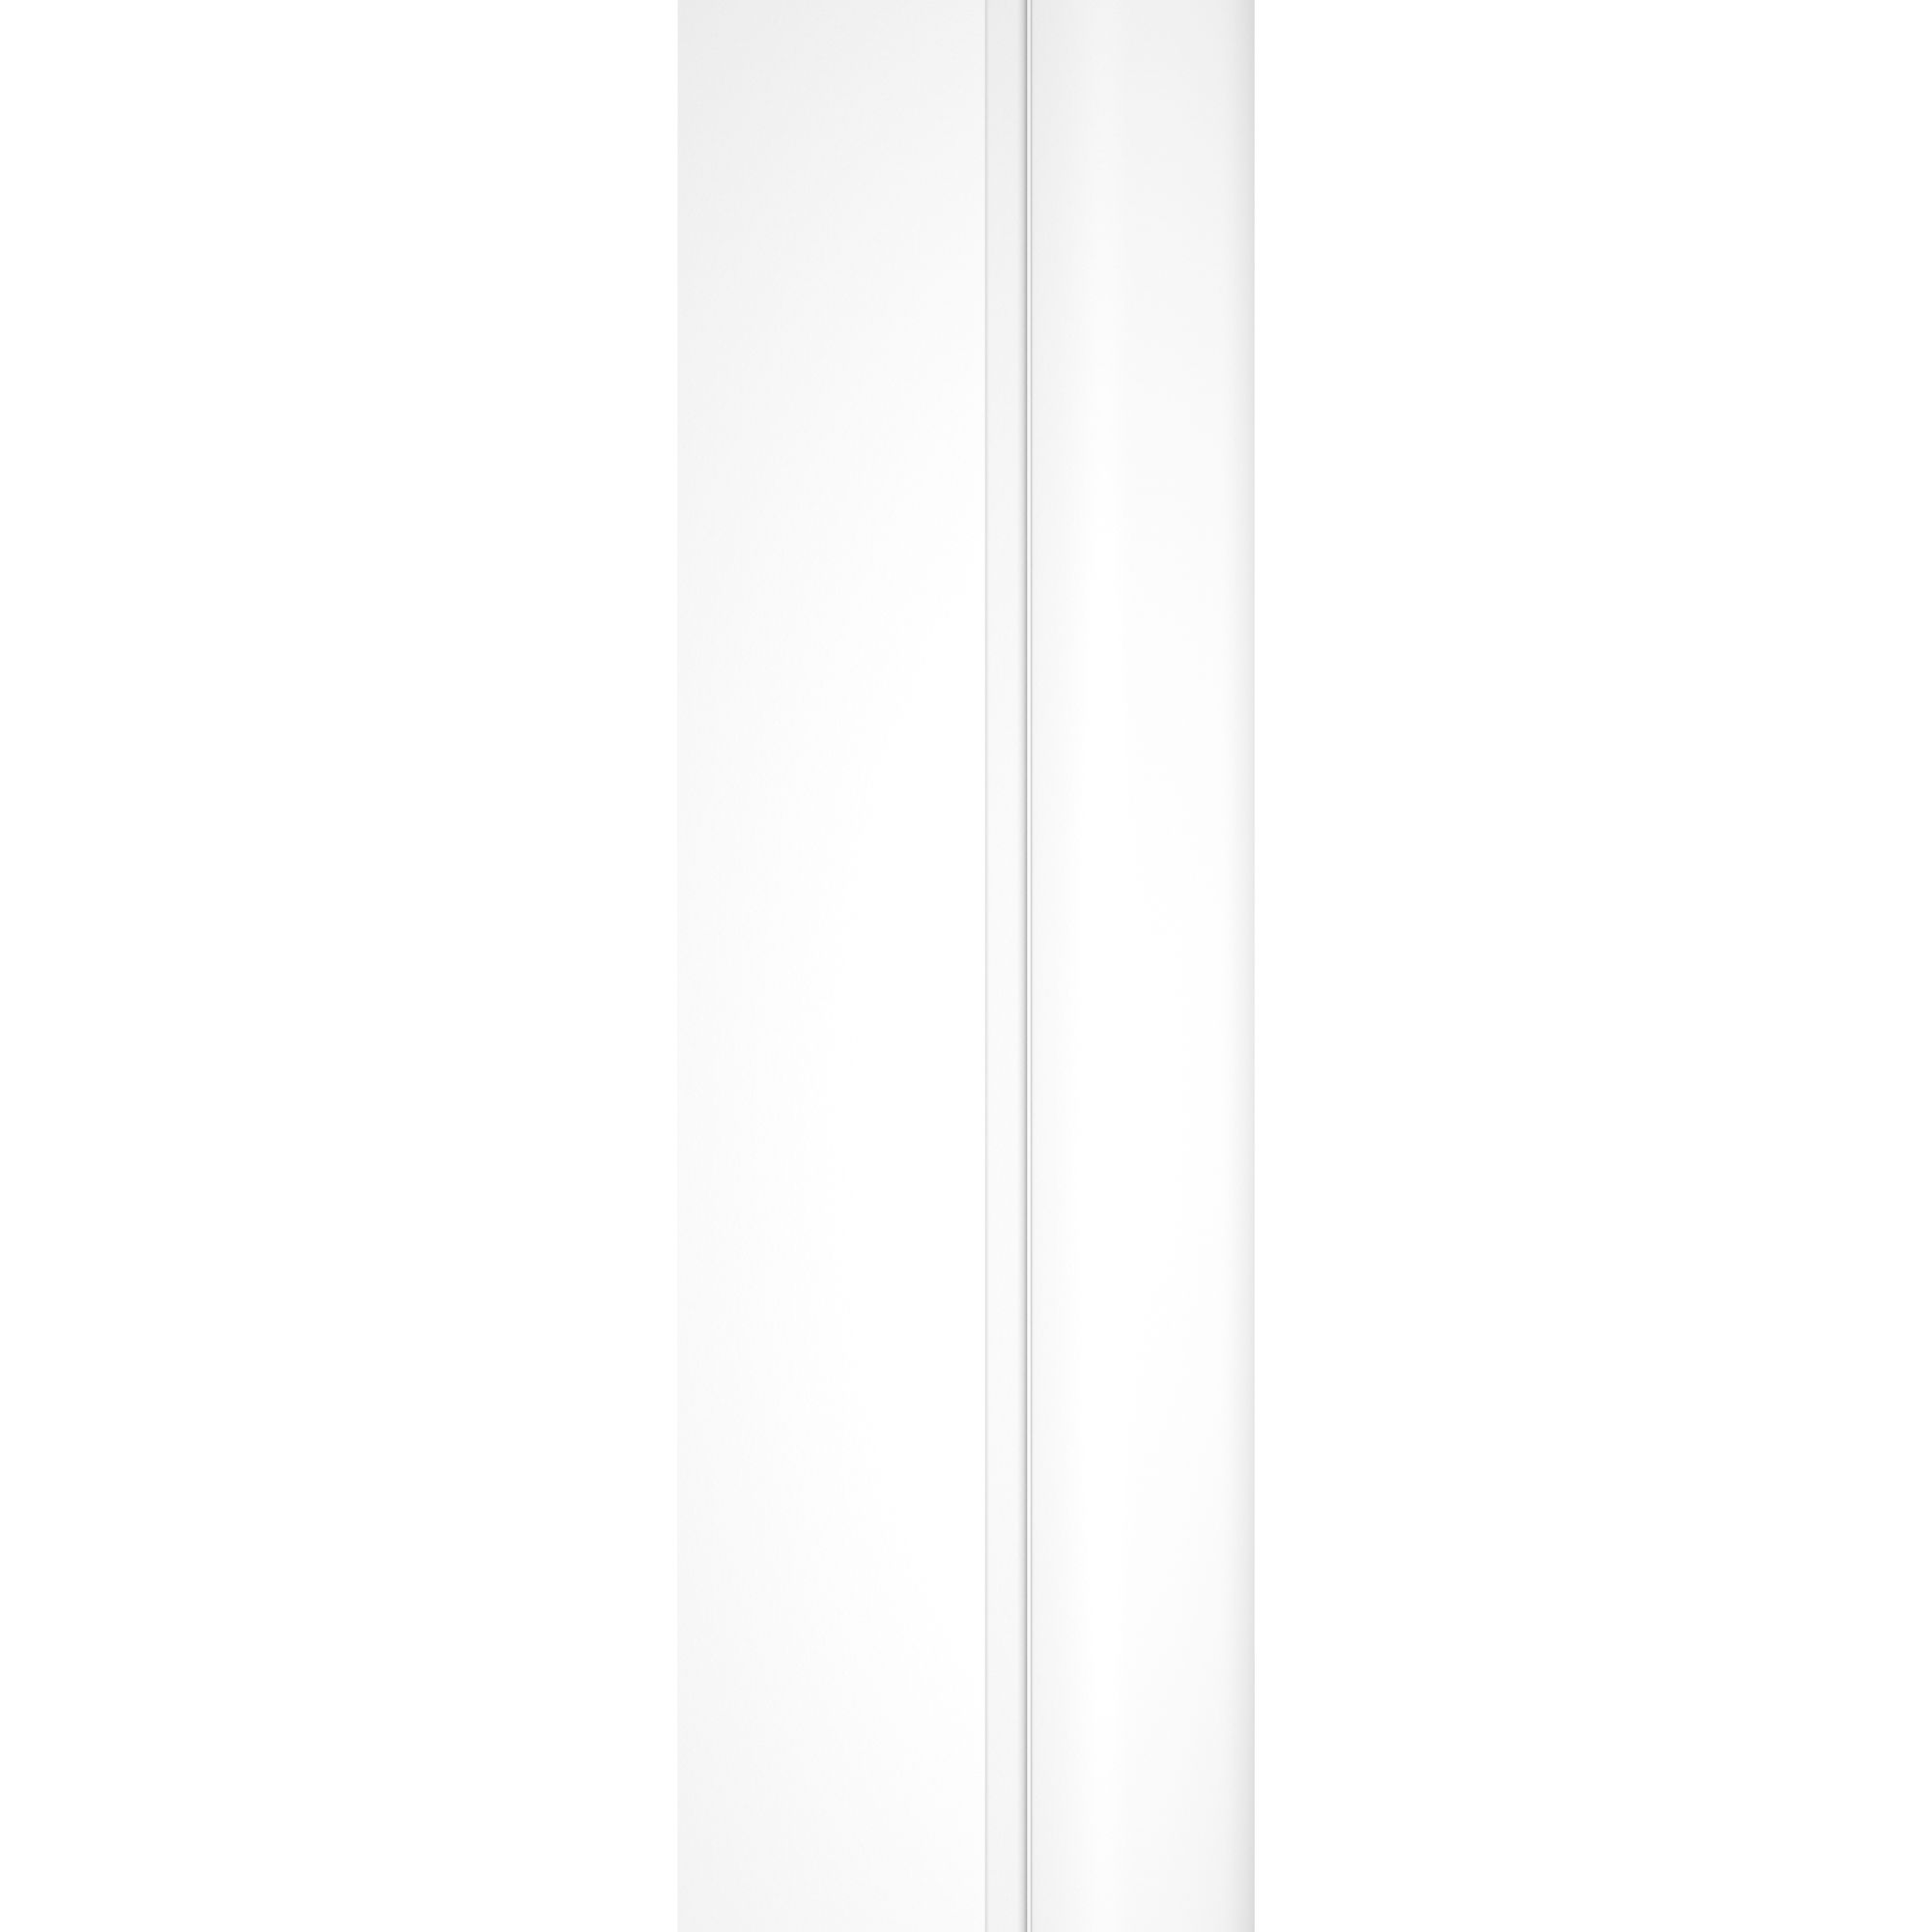 Schulte pare-baignoire rabattable 104 x 130 cm, verre 5 mm, paroi de baignoire mobile 2 volets, écran de baignoire pivotant, profilé blanc 3